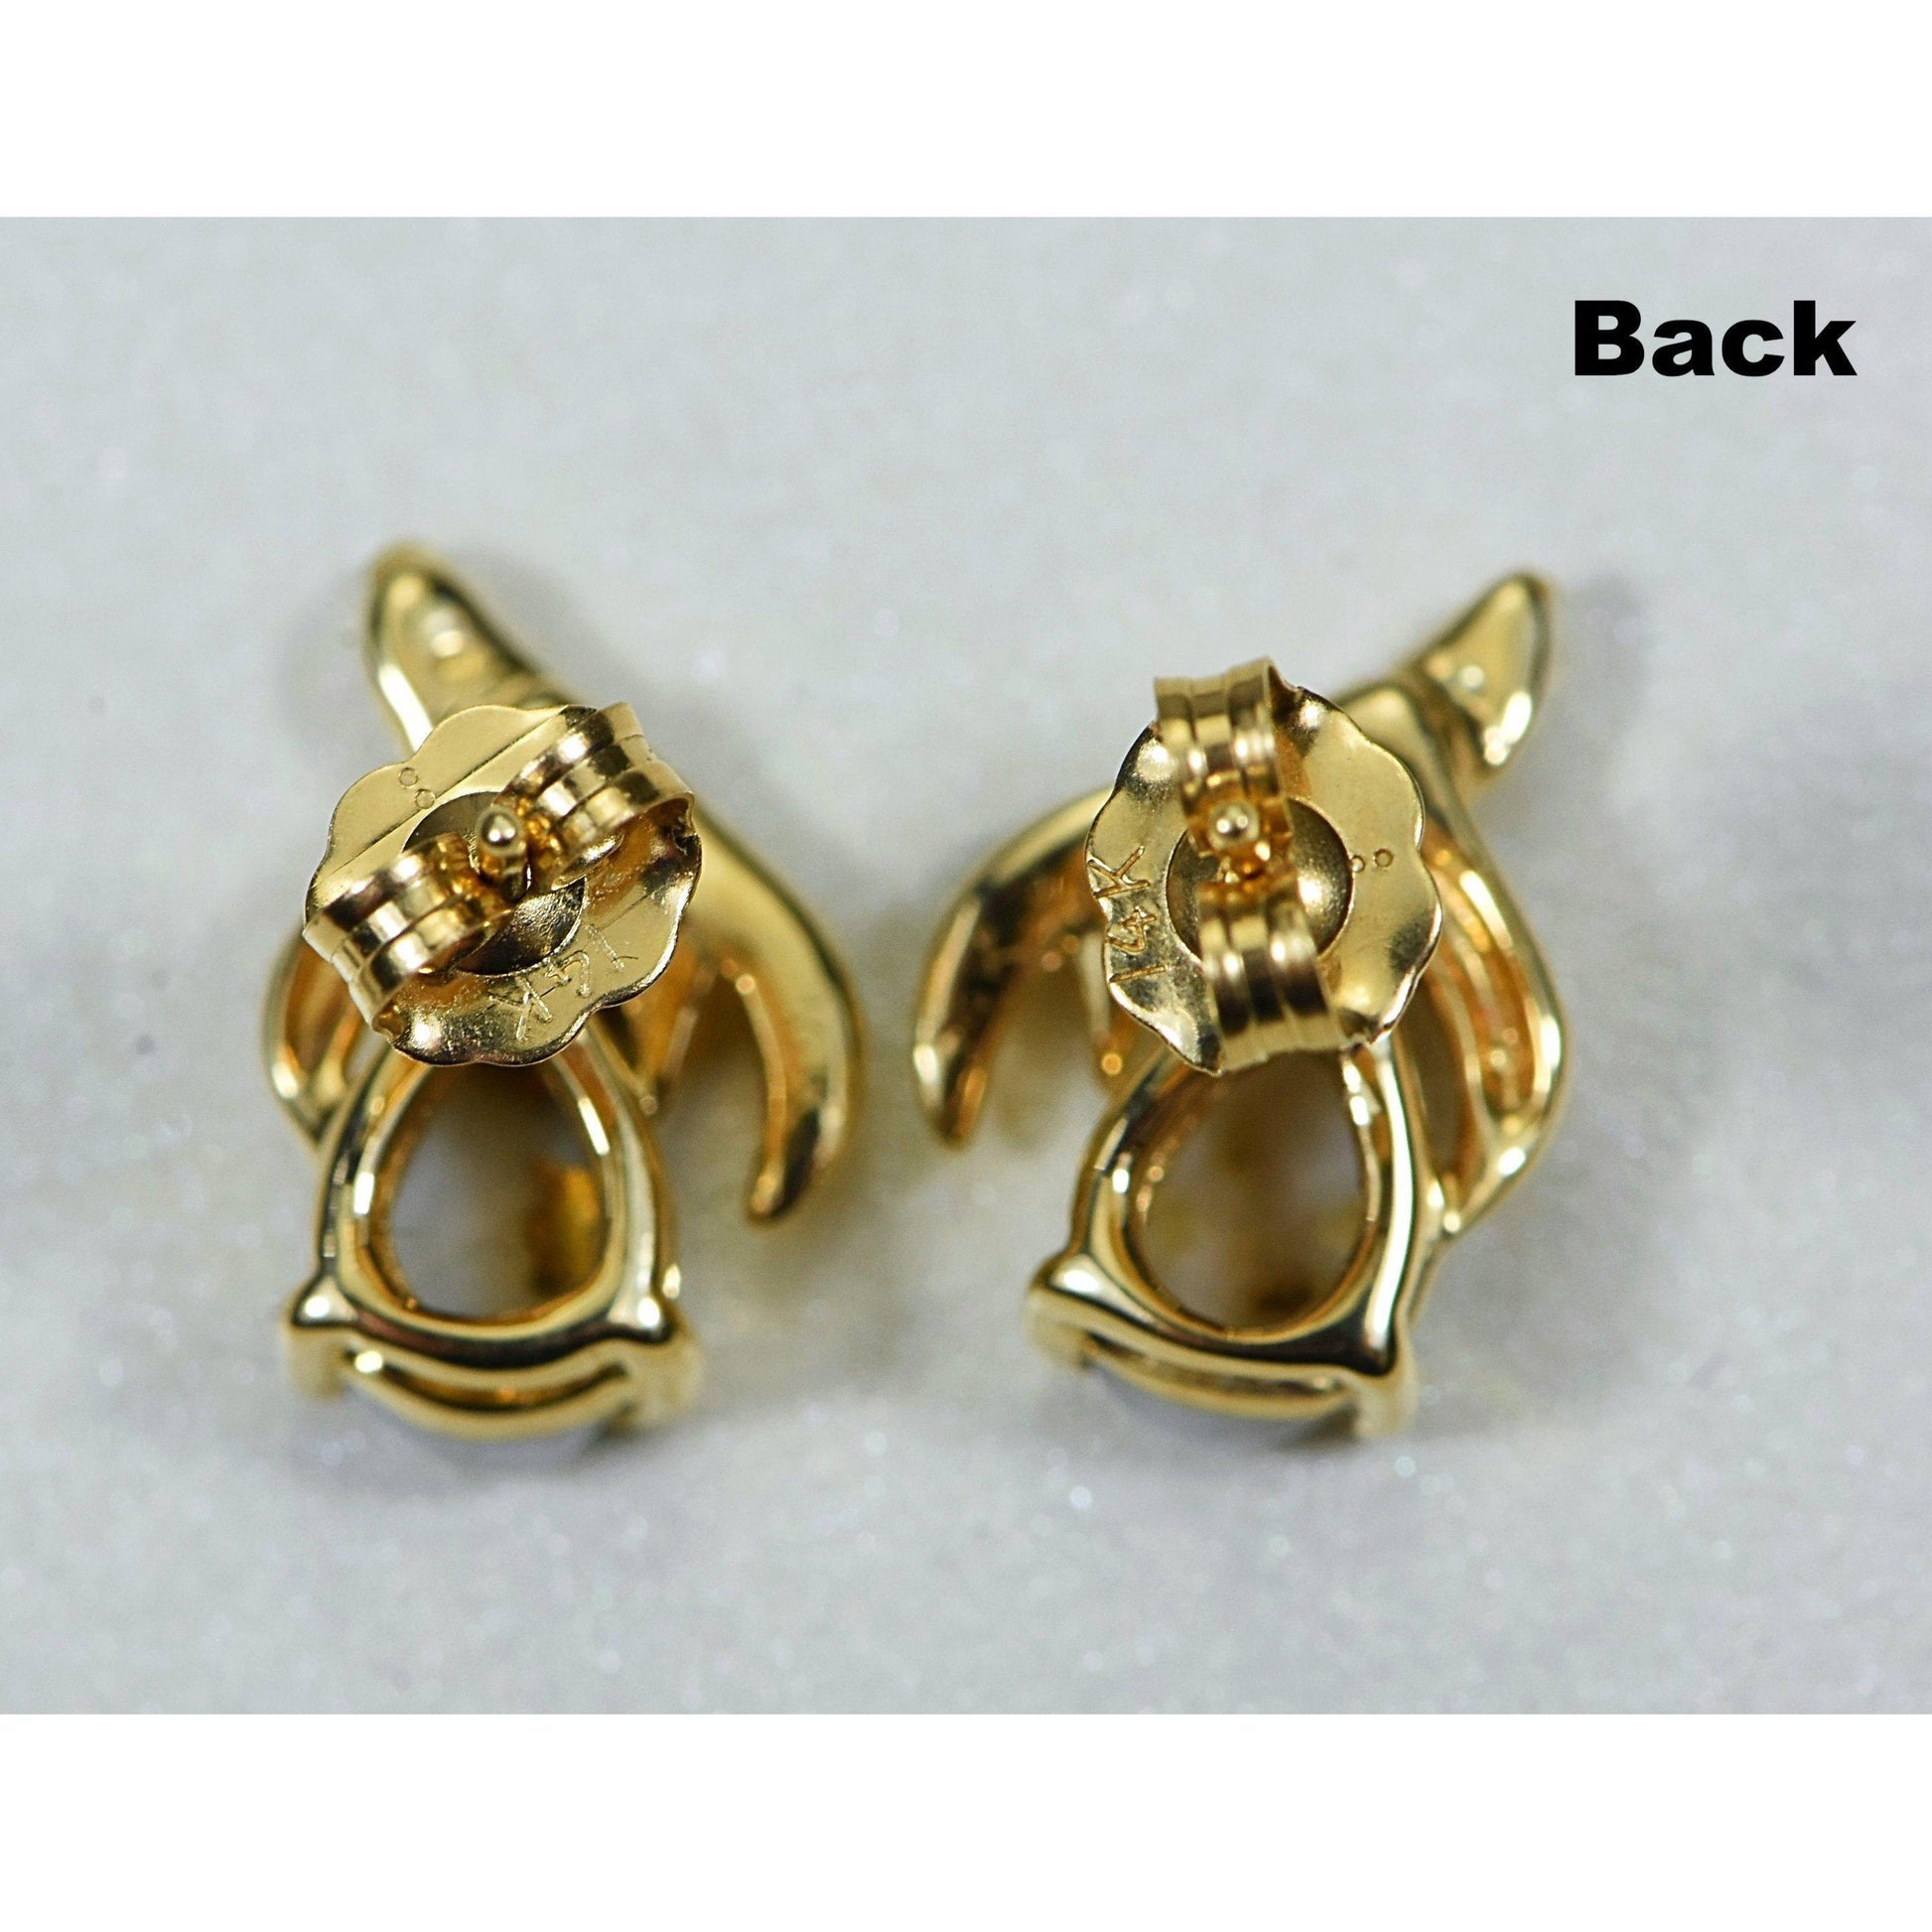 Gold Quartz Earrings Post Backs - EN792SNQ-Destination Gold Detectors